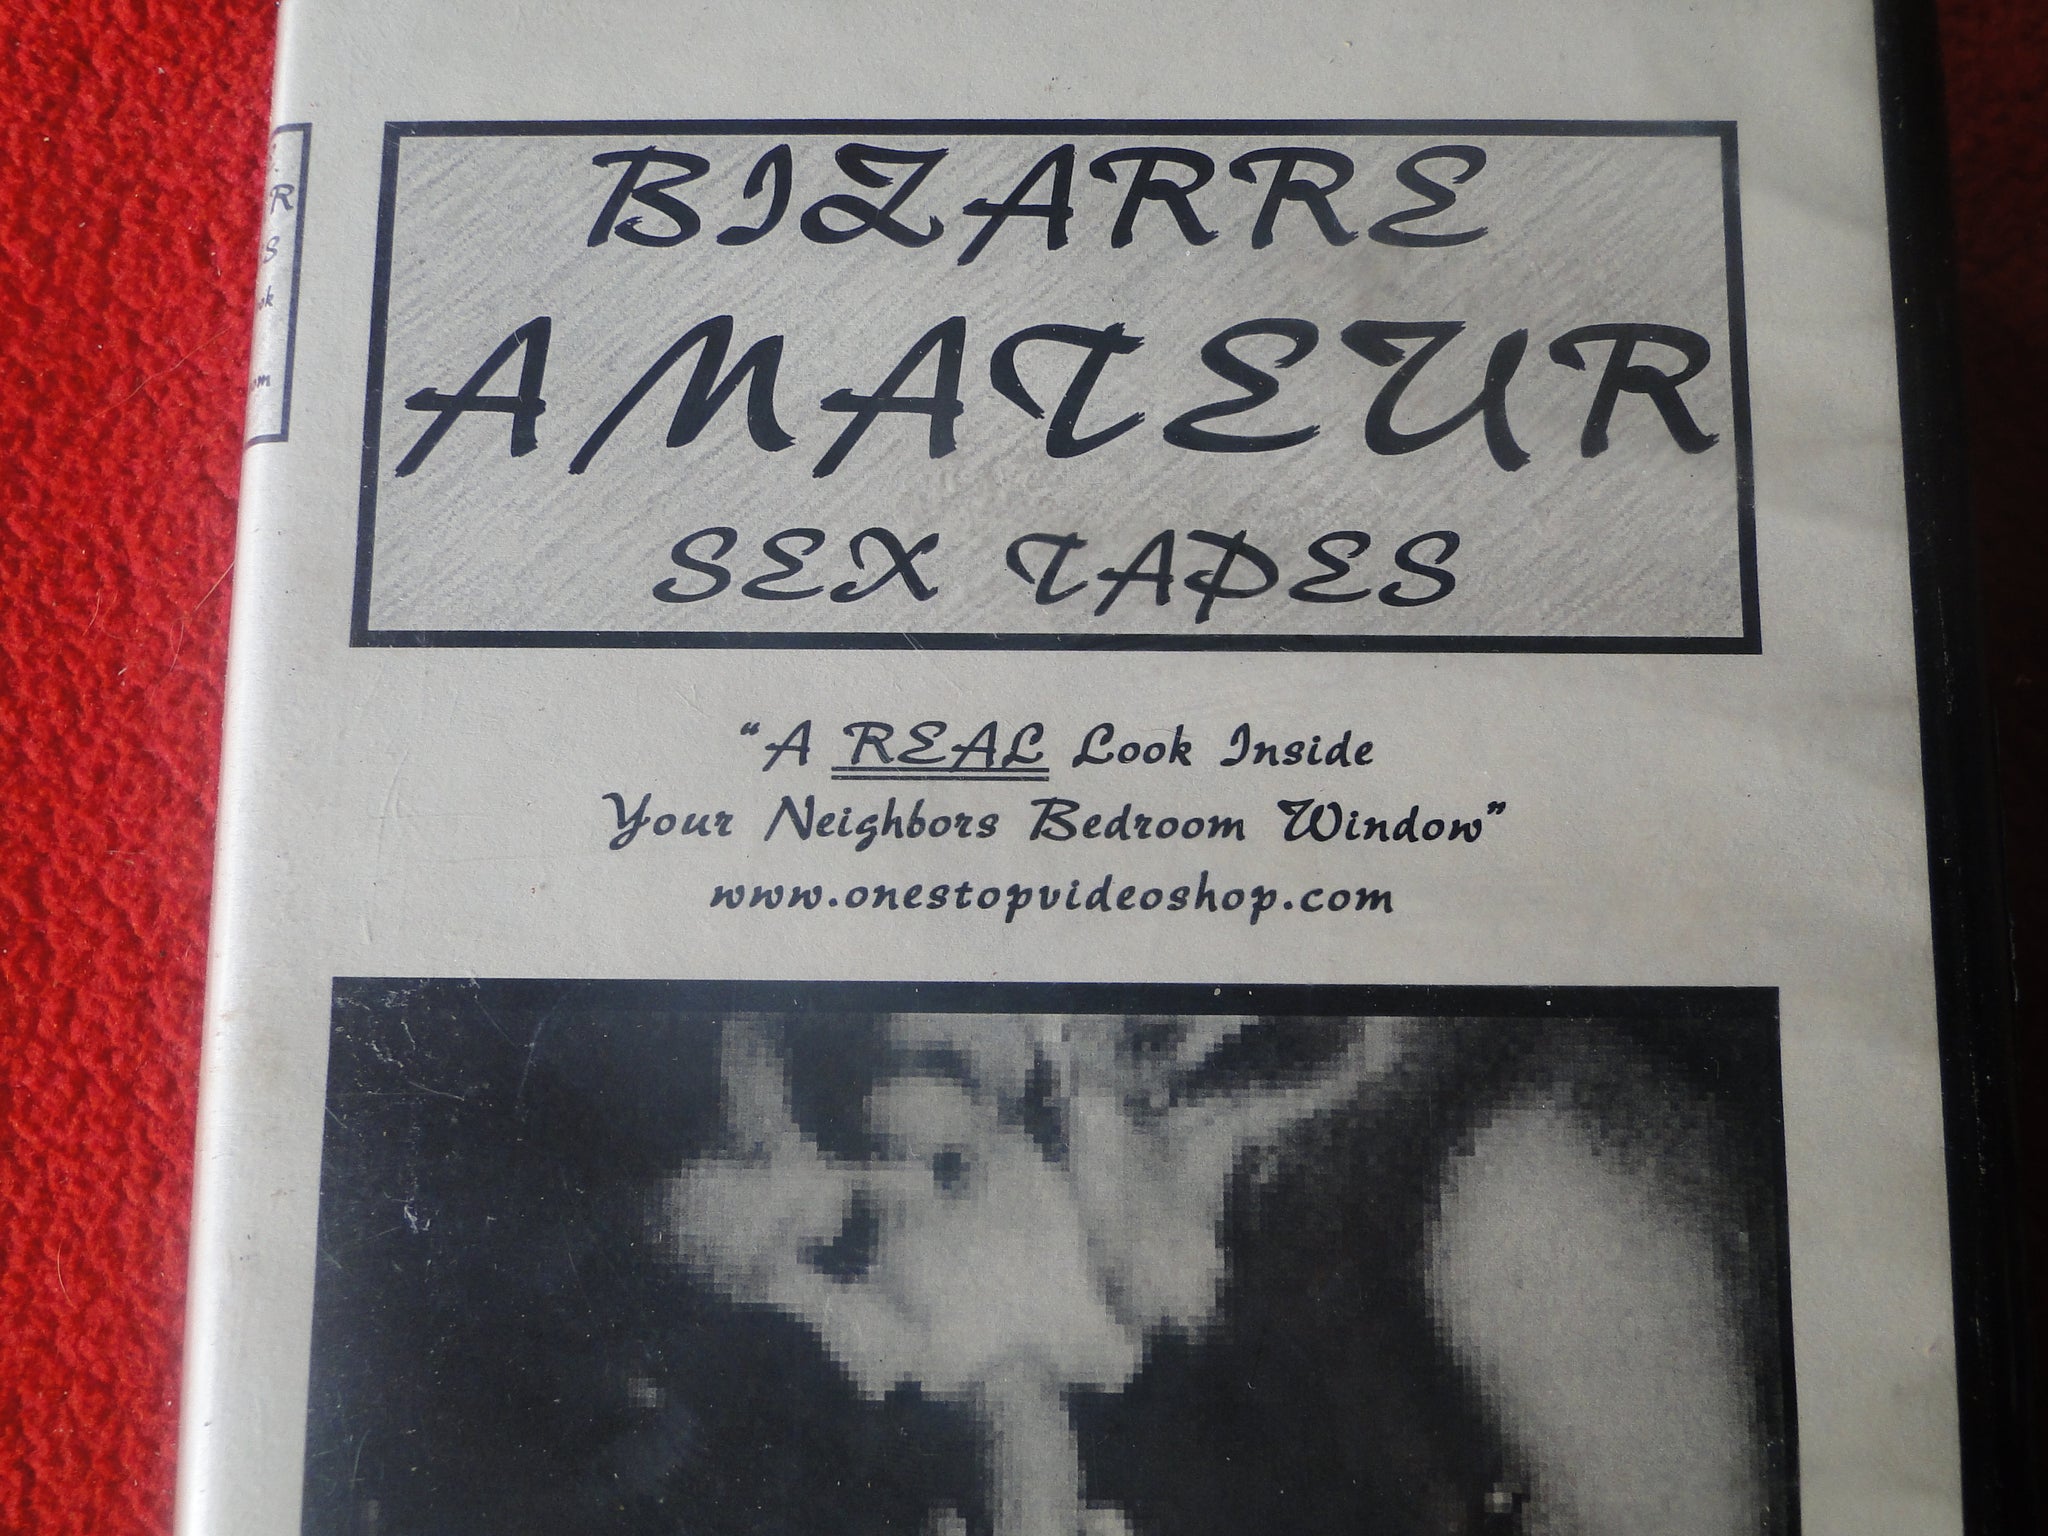 Vintage Adult XXX VHS Porn Tape Bizarre Amateur Sex Tapes Classic Stag image image